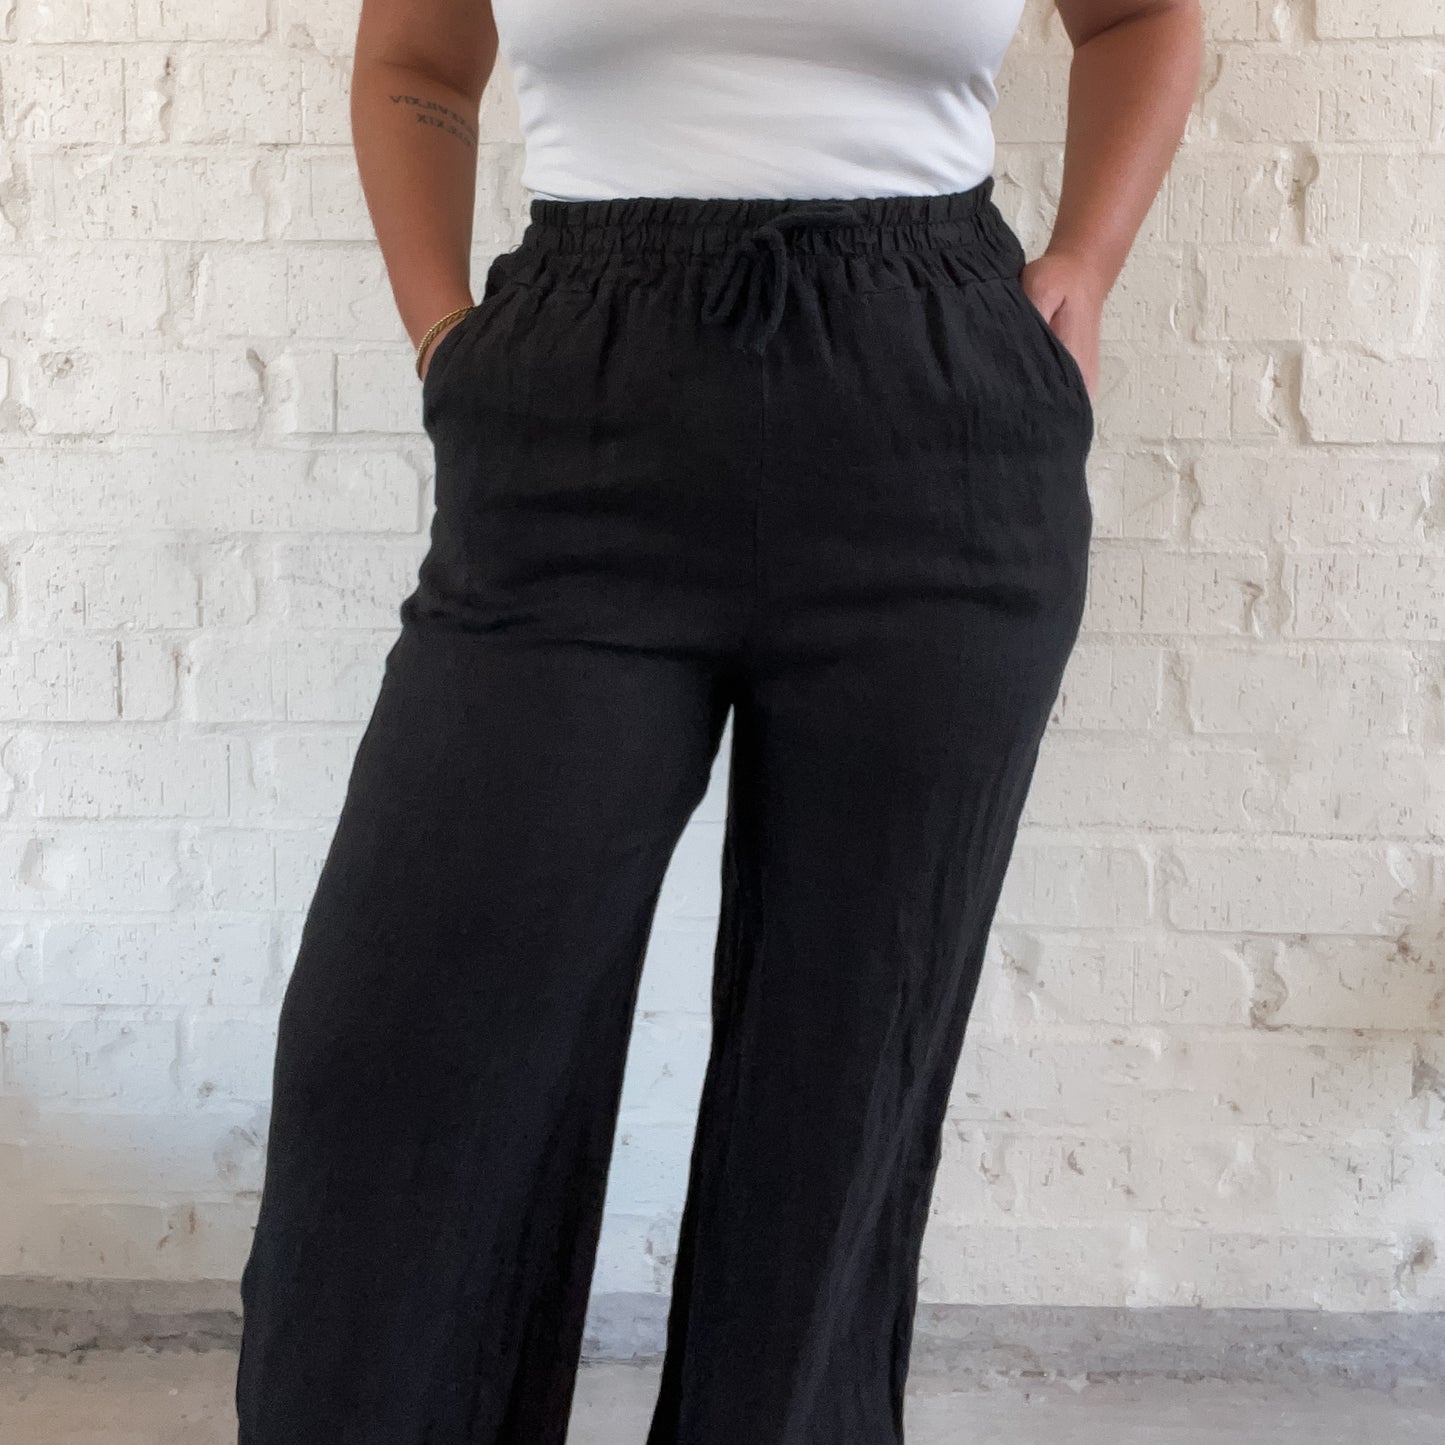 Oakland Italian Linen Pants in Black